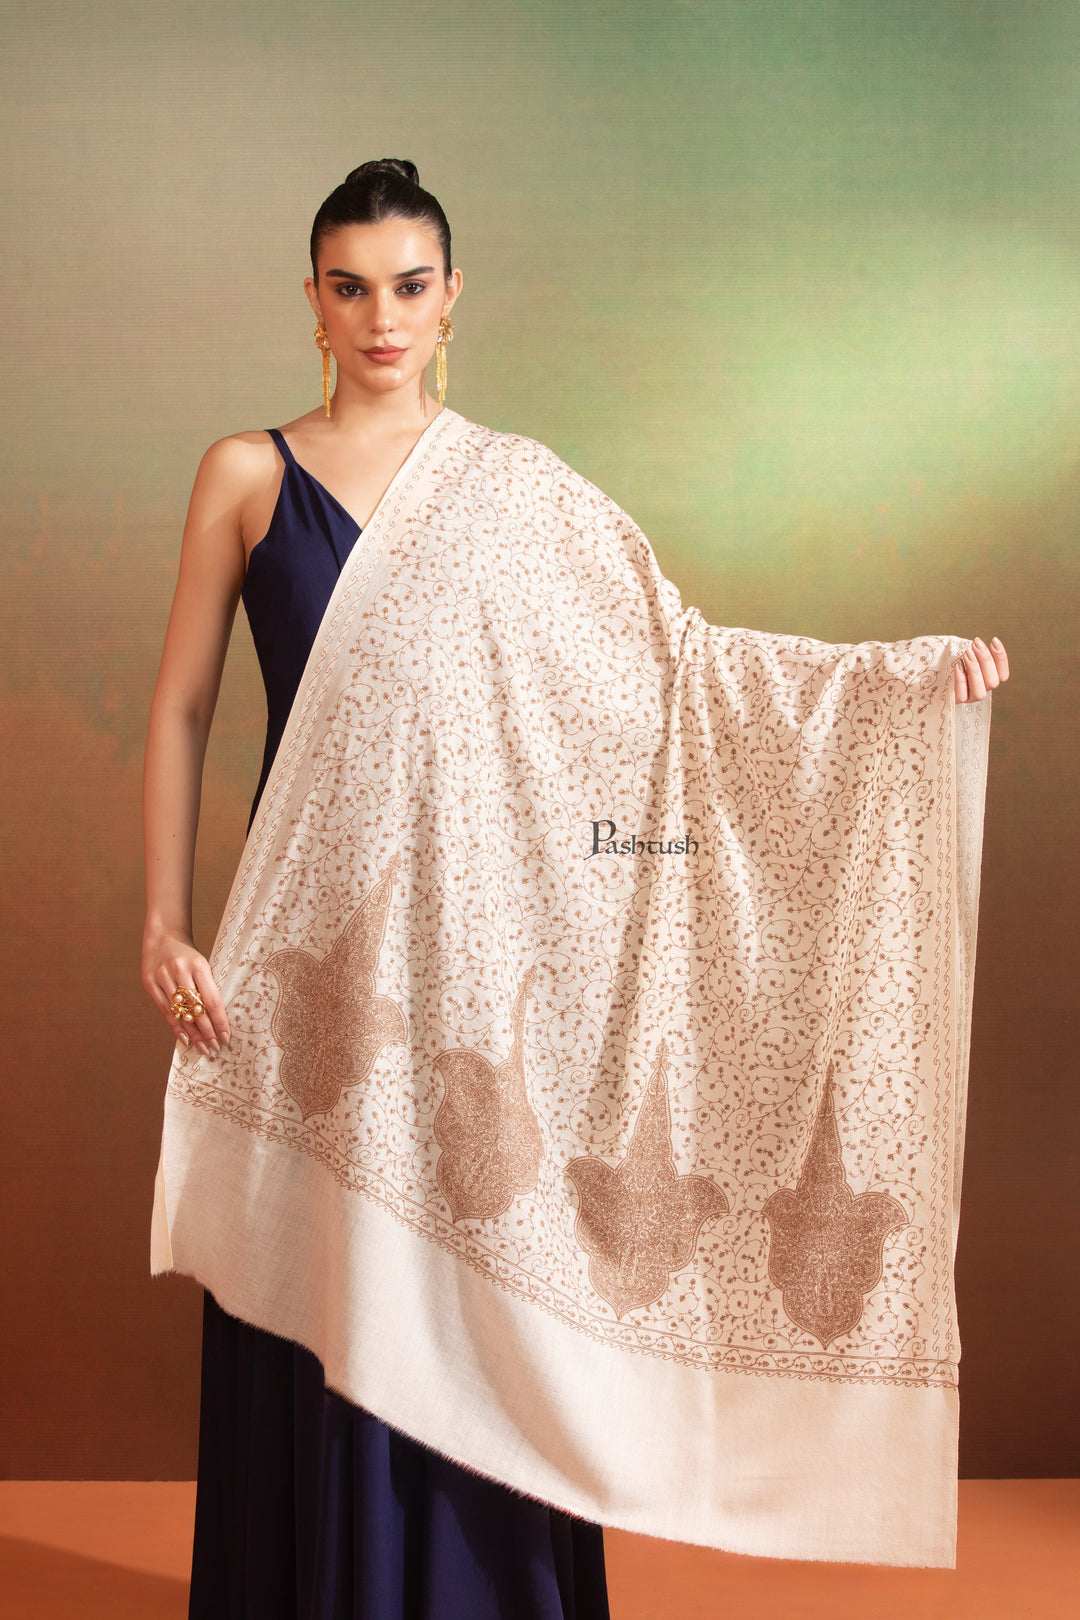 Pashtush India Womens Shawls Pashtush Womens Extra Fine Wool Shawl, Tone On Tone Embroidery Design, Beige